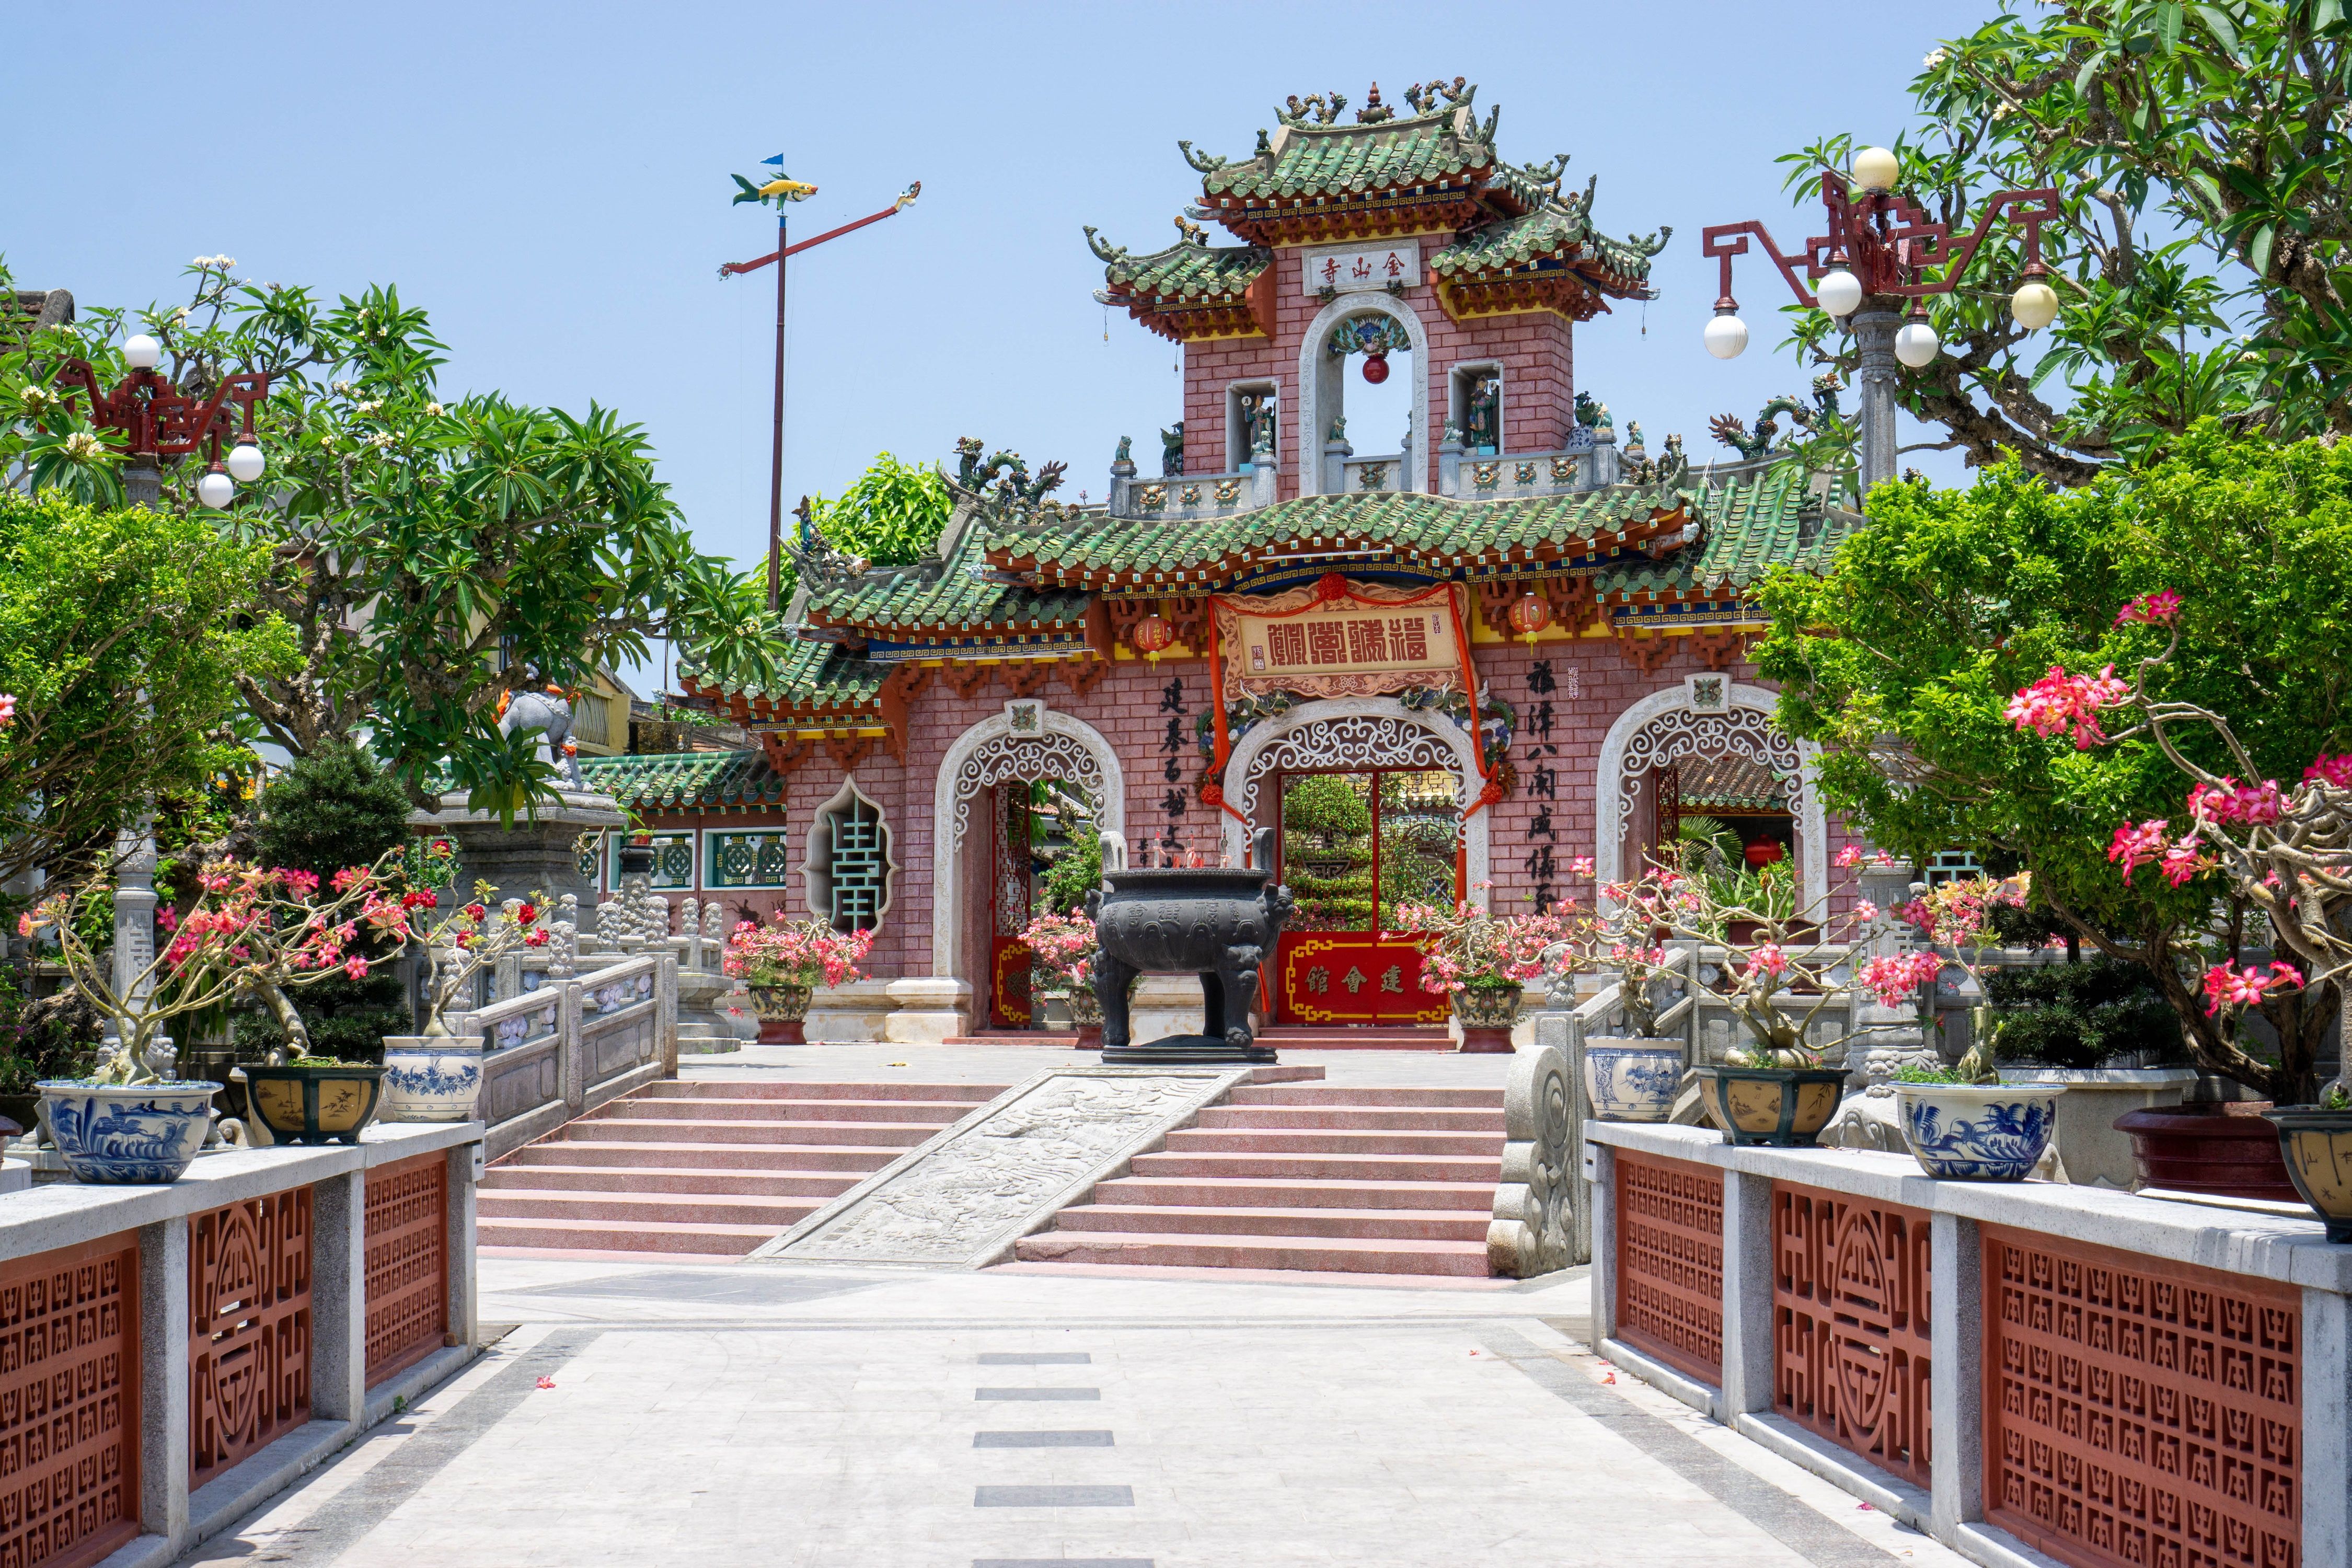 Chuc Thanh Pagoda